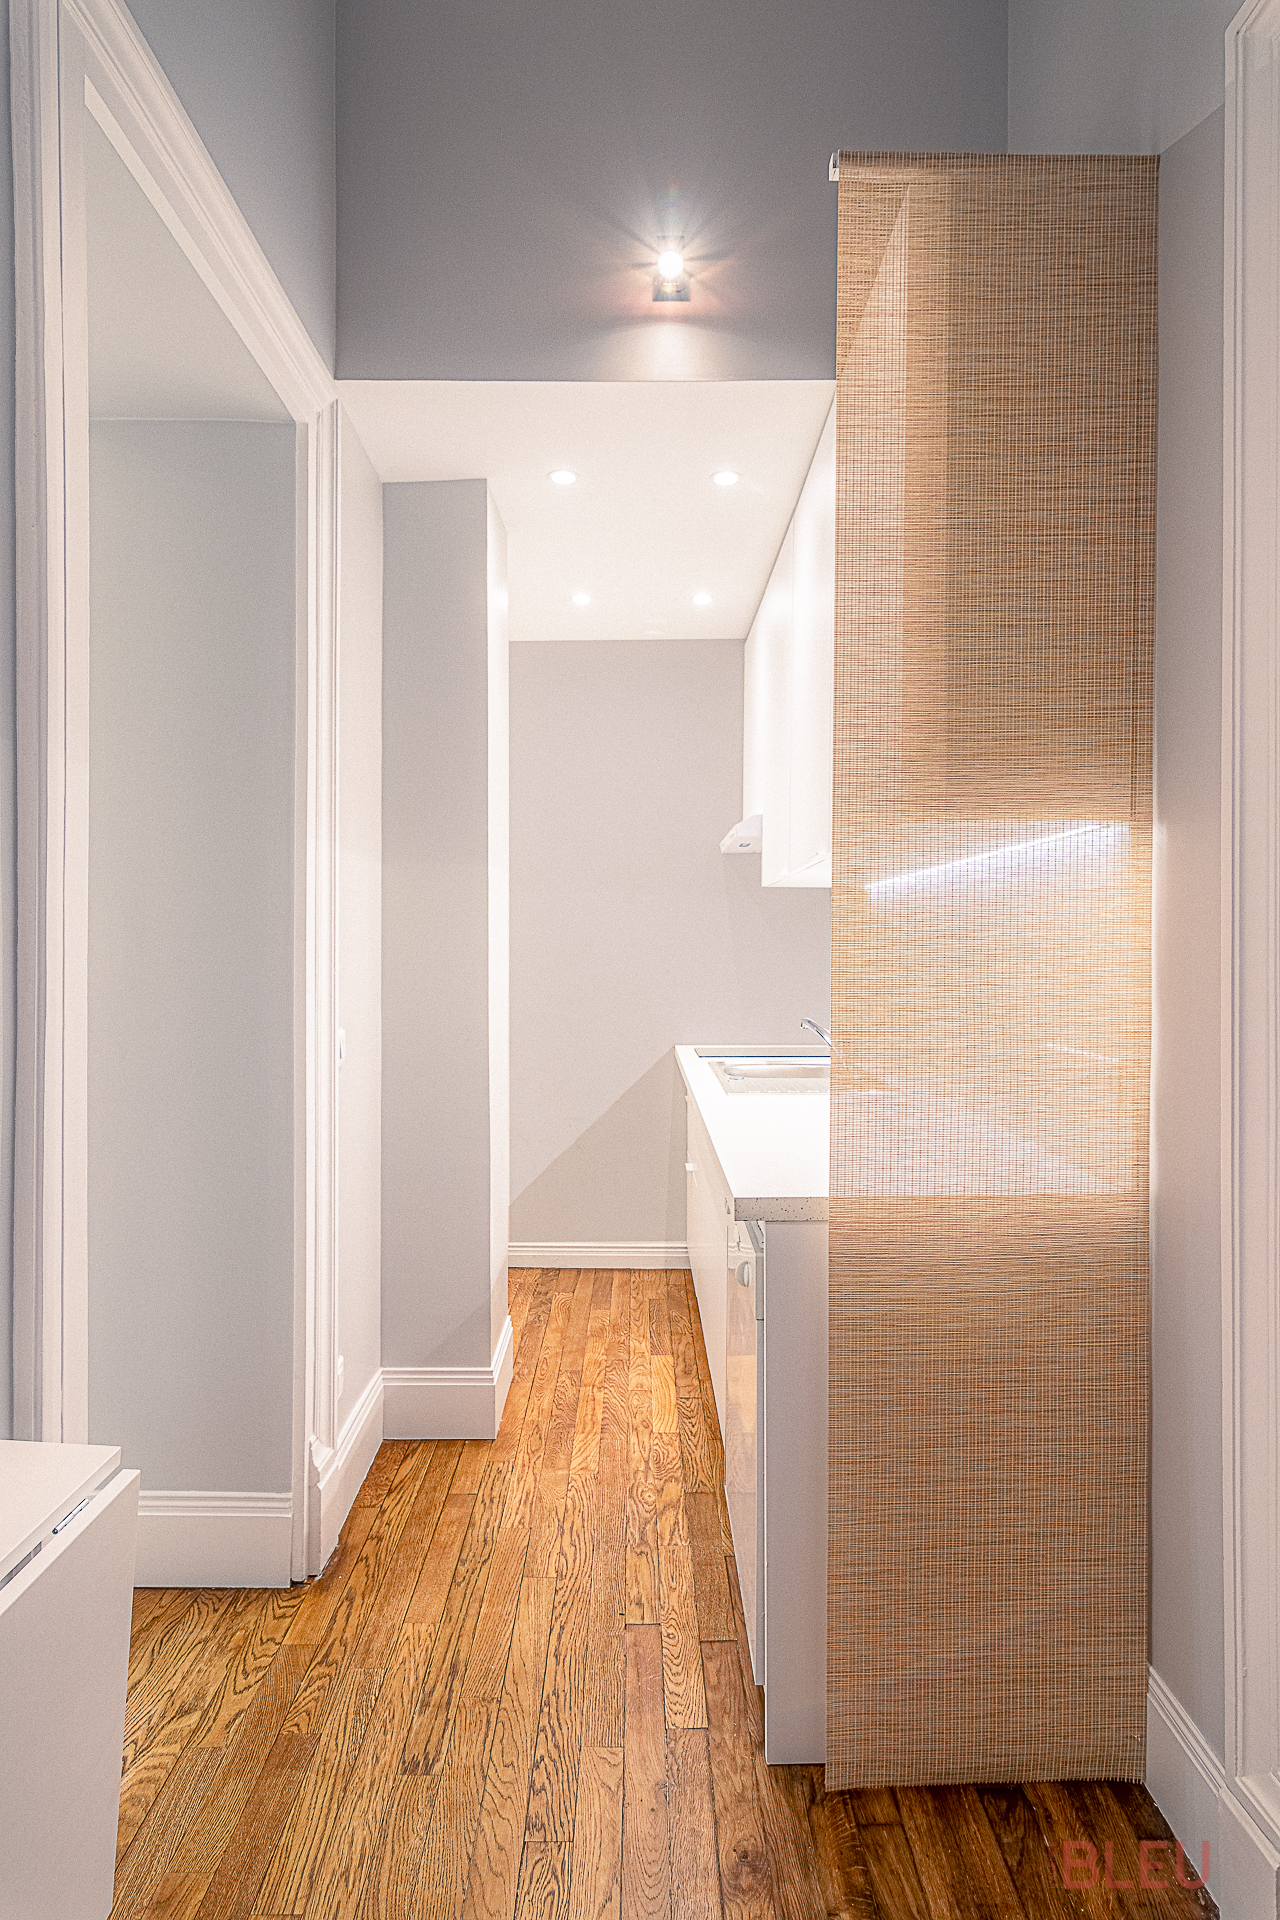 Petite cuisine moderne et minimaliste avec parquet clair, armoires blanches et cloison en bambou - Projet de rénovation appartement haussmannien à Paris par notre agence d'architecture intérieur